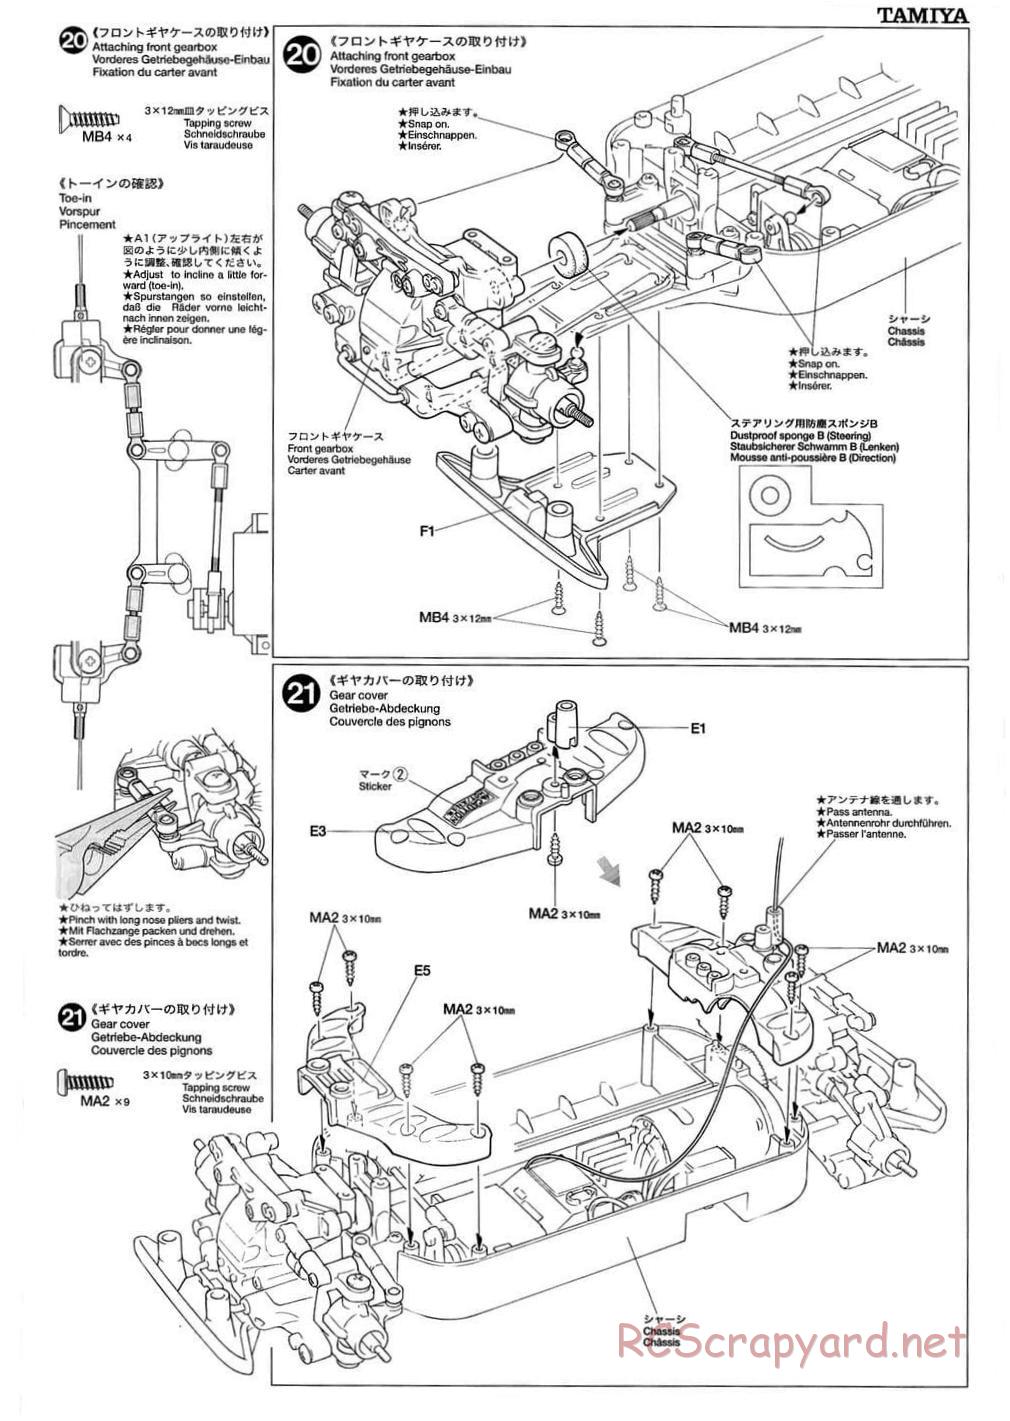 Tamiya - TB-01 Chassis - Manual - Page 11